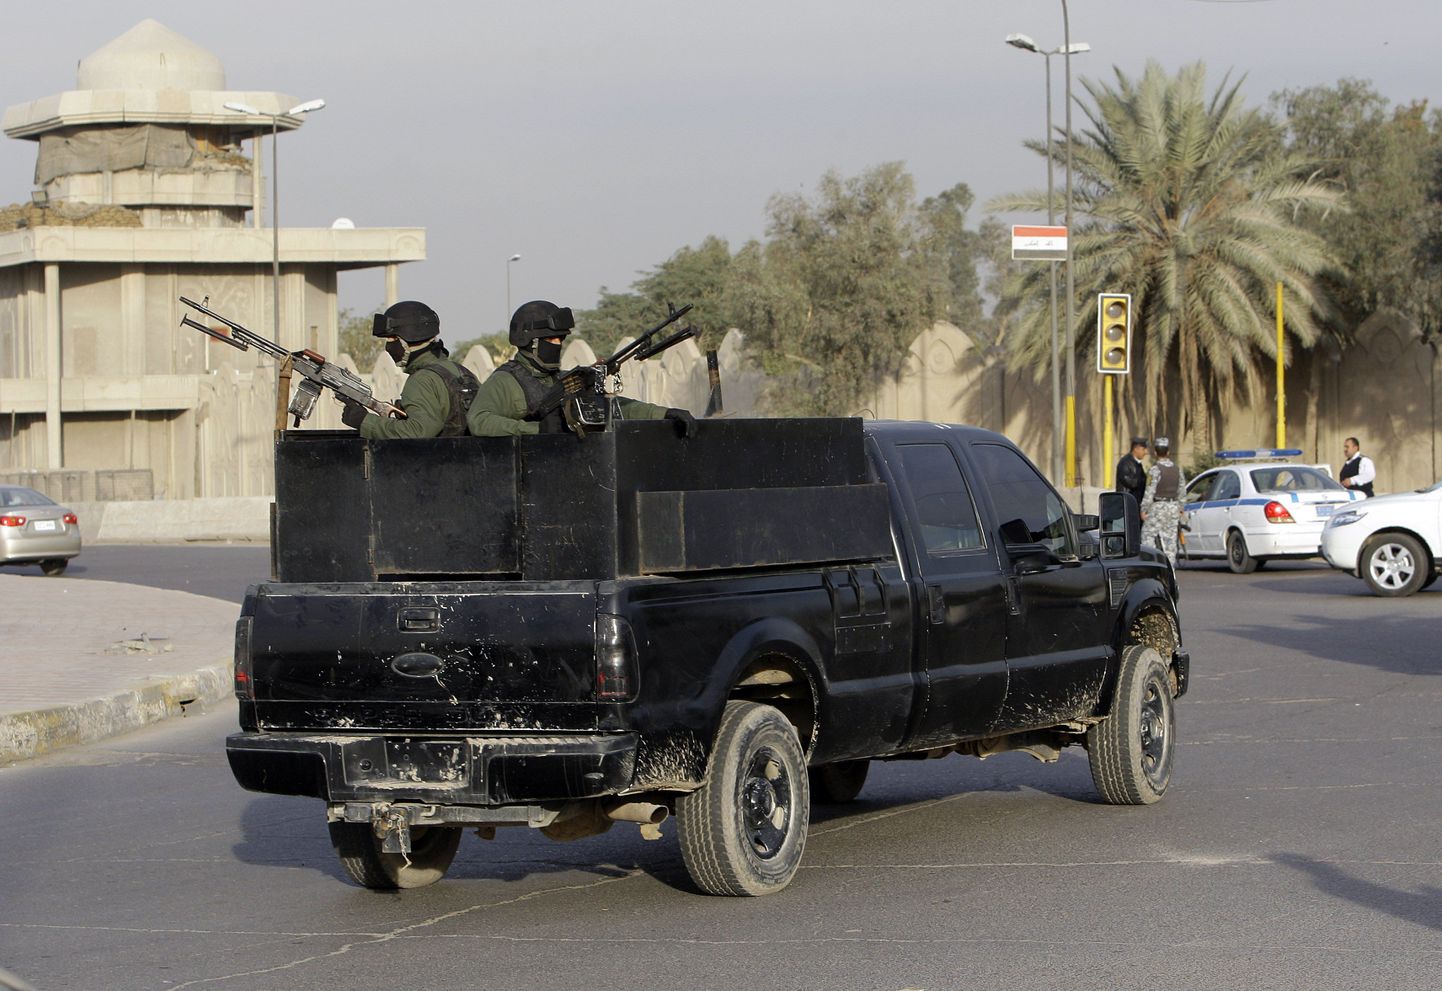 Джип частного охранного предприятия в Багдаде, на площади Аль-Нисор, где в 2007 году произошел инцидент с охранниками из Blackwater.